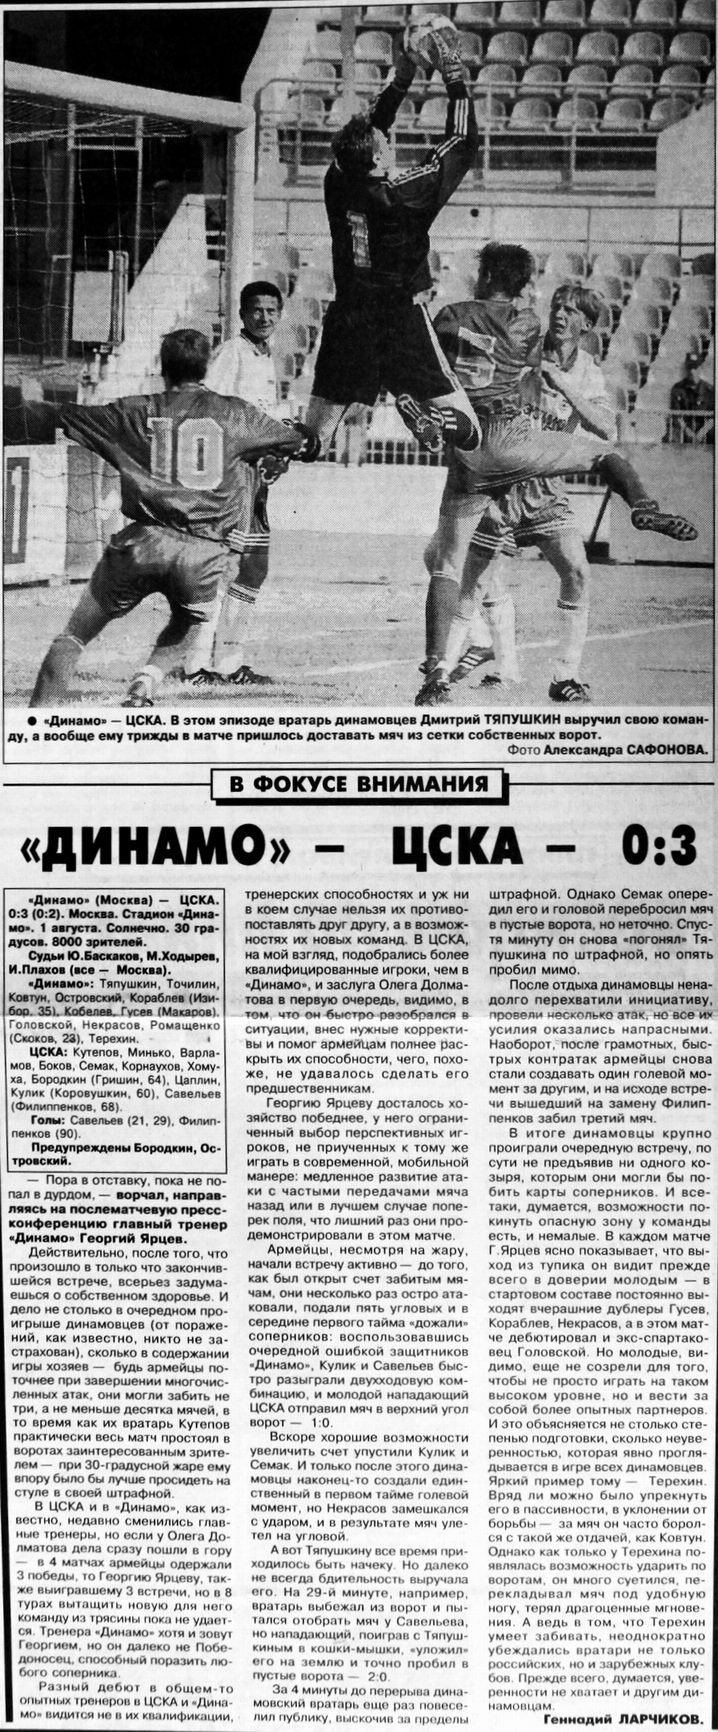 1998-08-01.DinamoM-CSKA.3